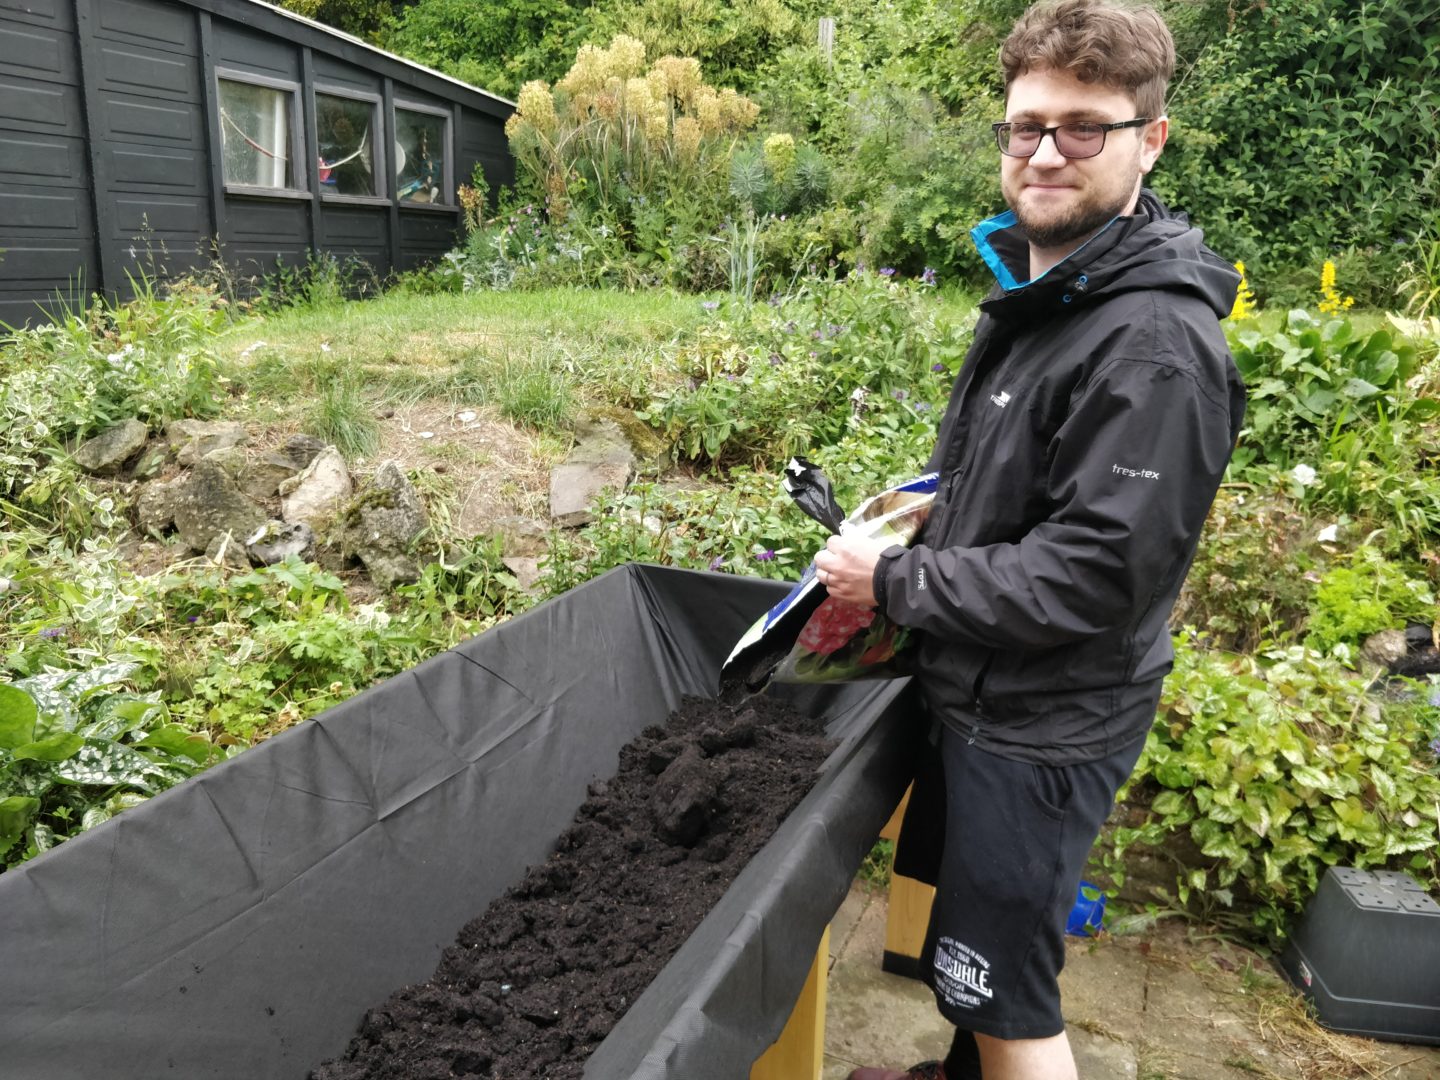 Vlad filling the vegtrug with soil